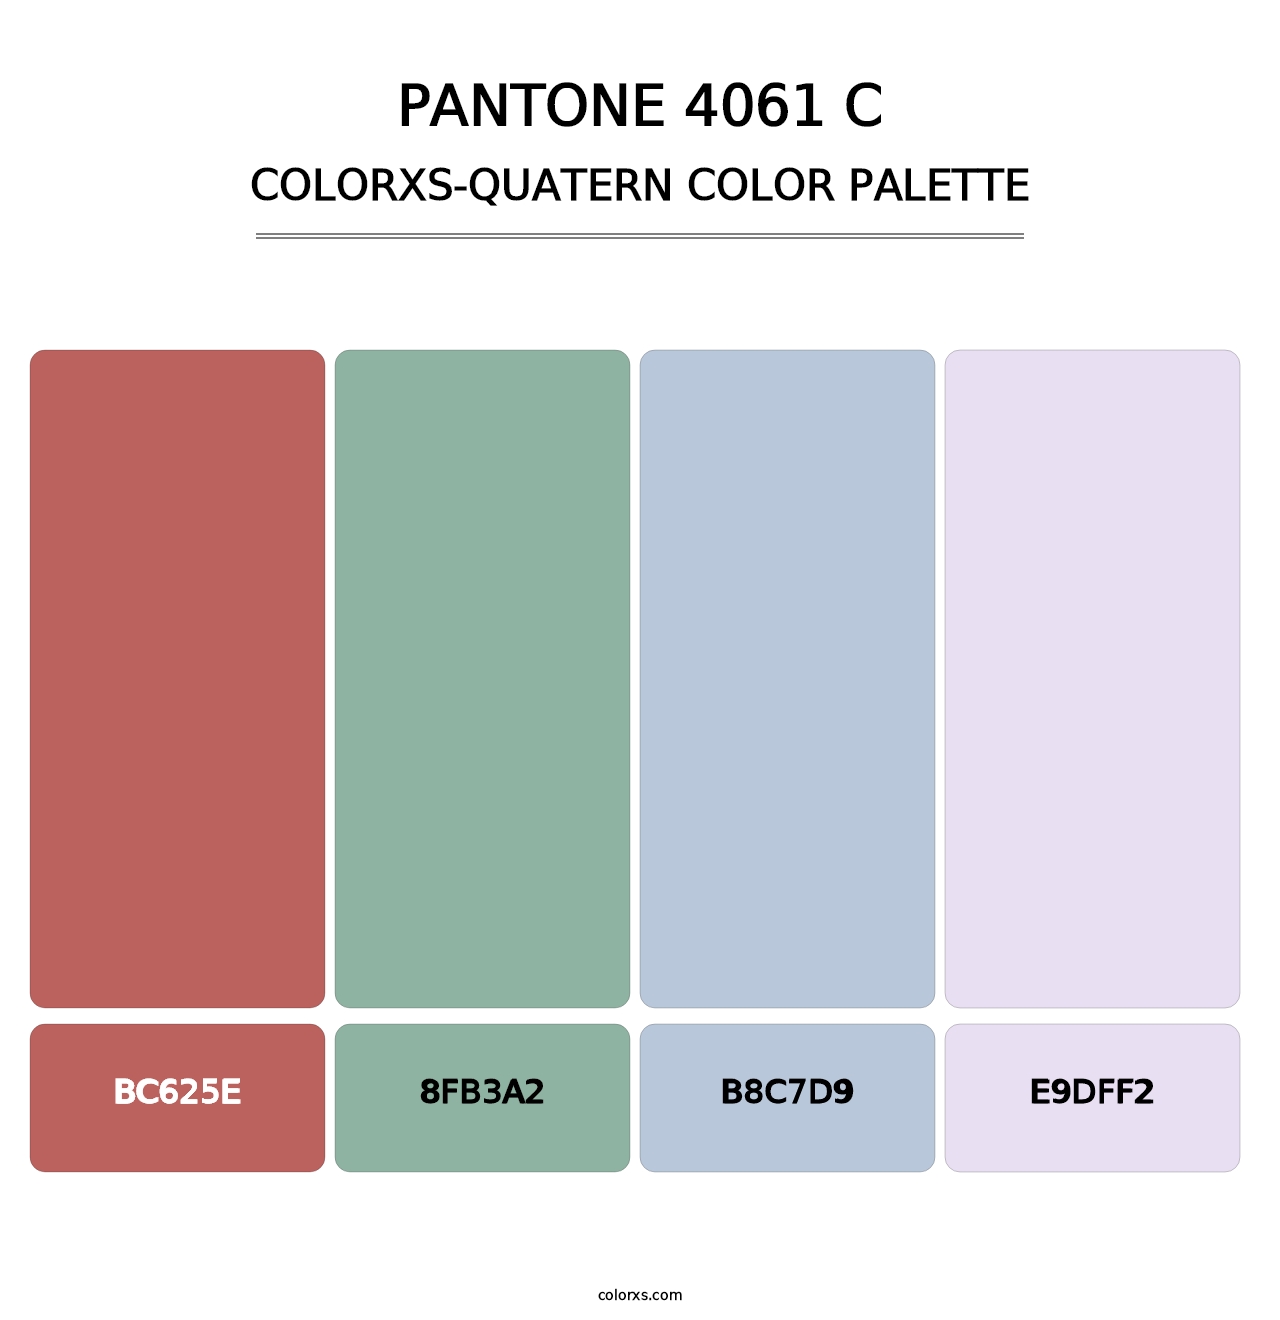 PANTONE 4061 C - Colorxs Quatern Palette